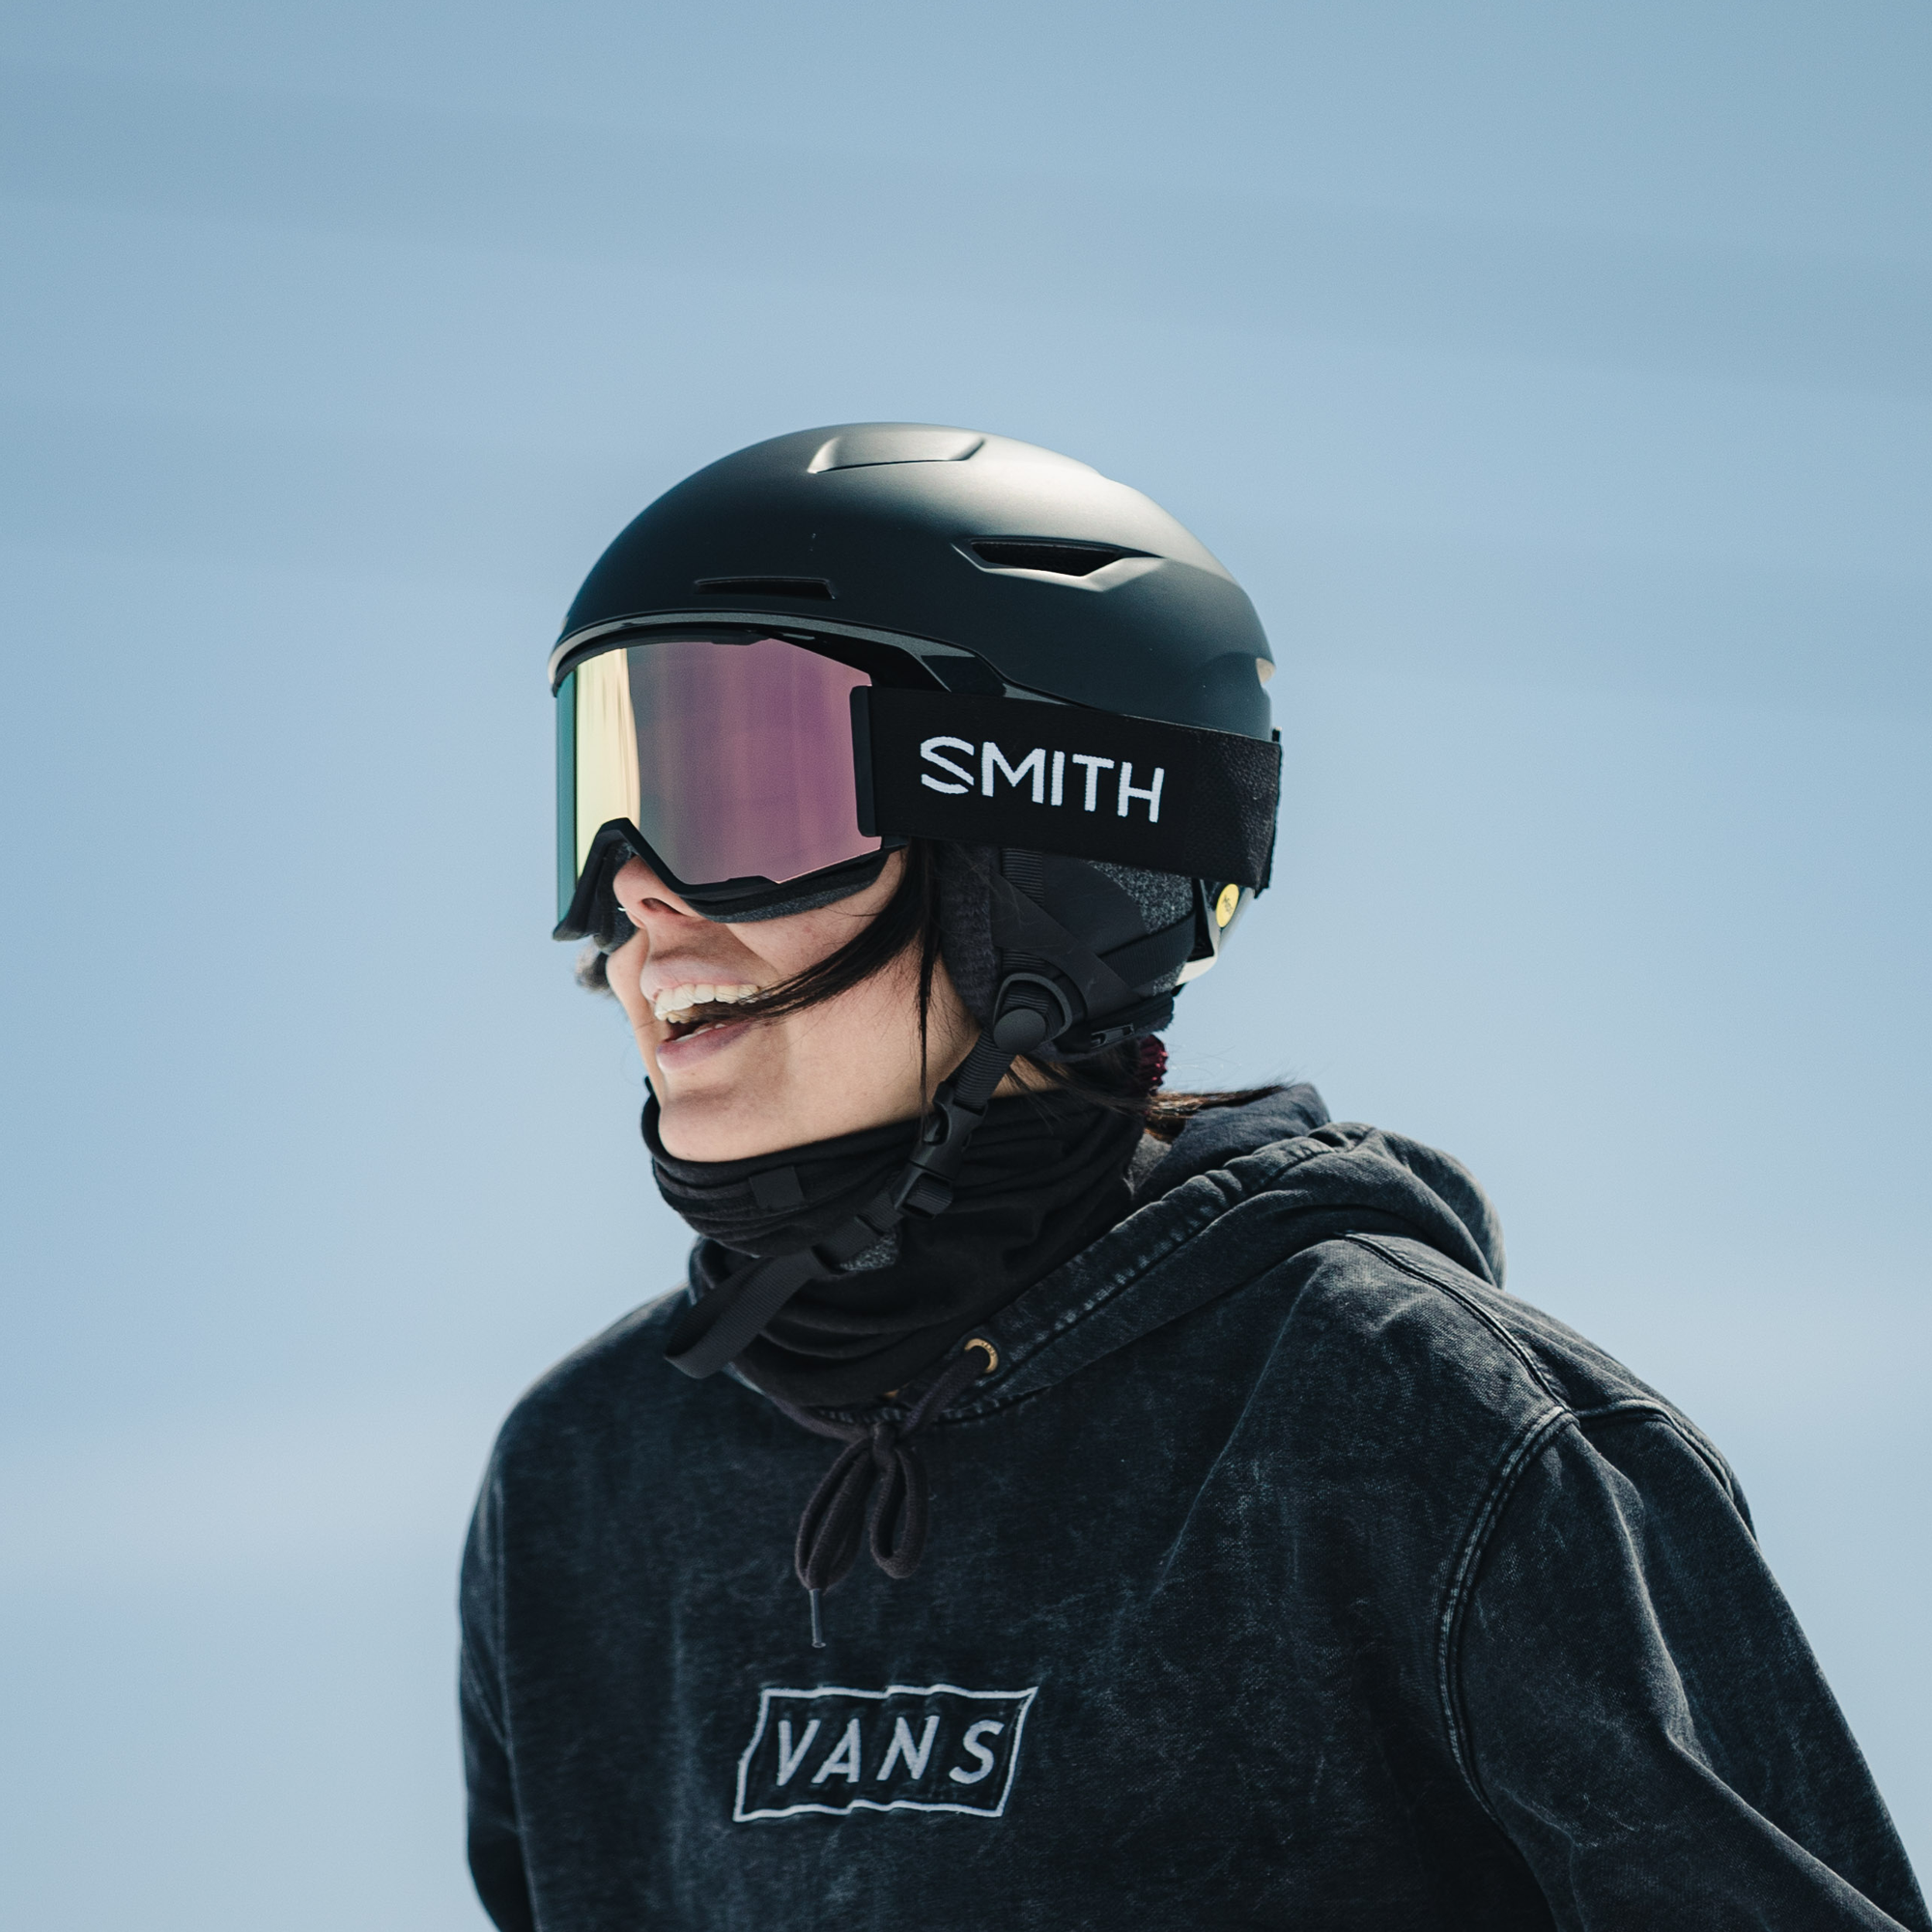 爆買い低価R様専用　SMITH Vida ヘルメット スキー・スノーボードアクセサリー